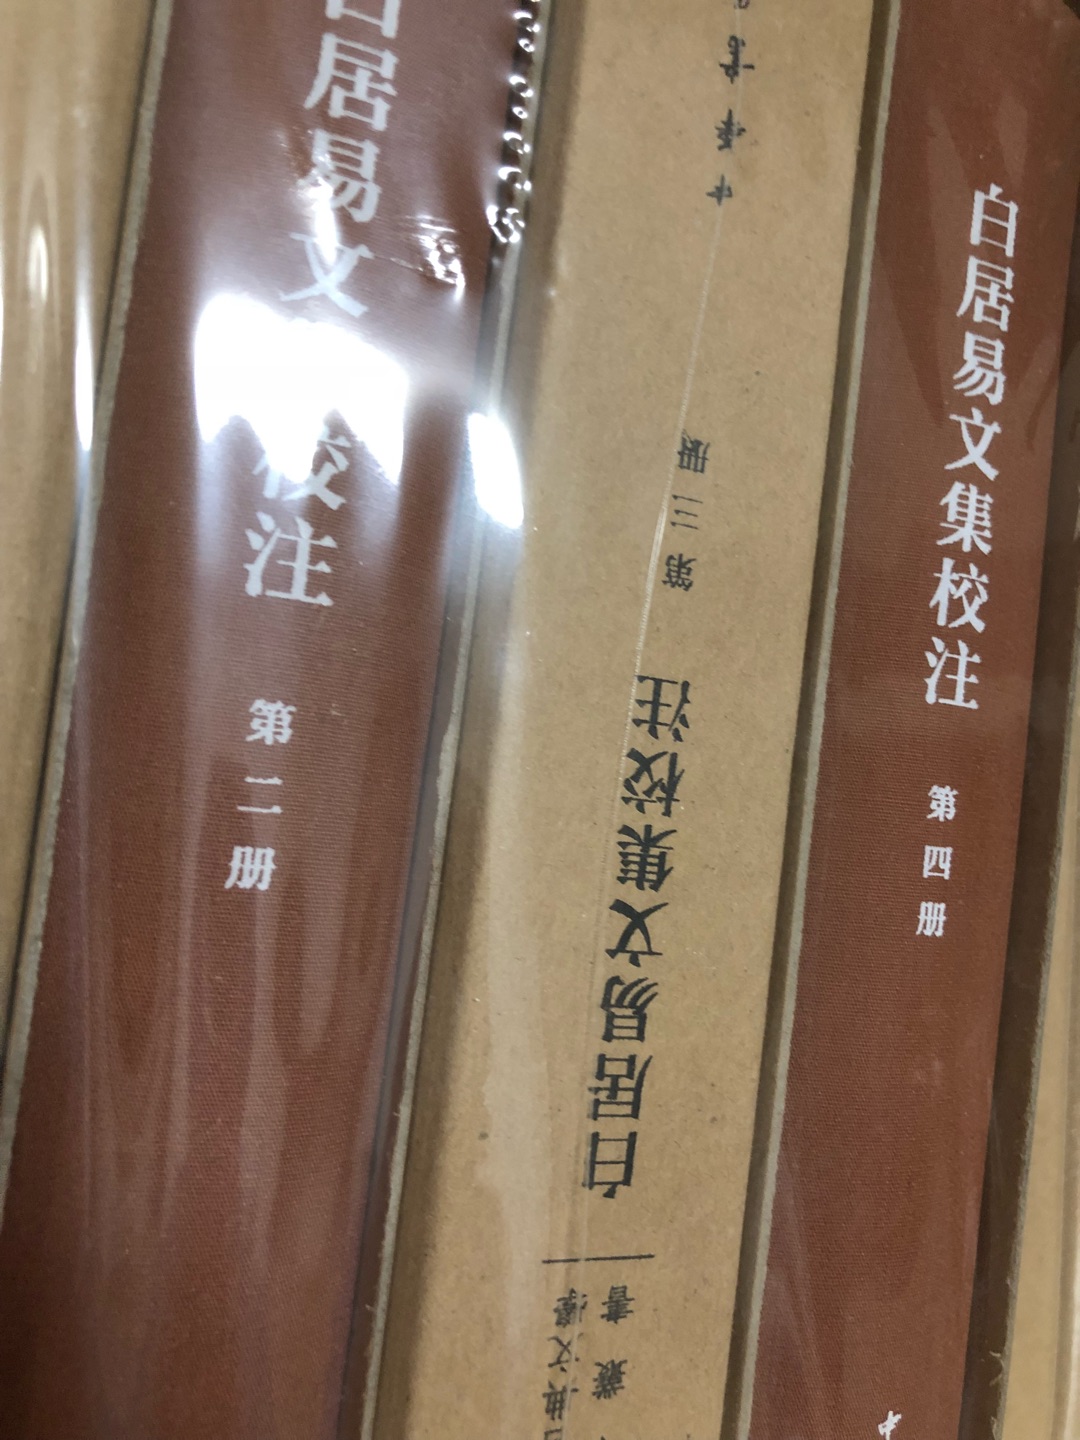 《中国古典文学基本丛书》是1912年1月1日创立由中华书局整理出版的一套大型丛书。该书主要汇集了最新的研究成果，约请专家对文学史上有影响的文学家的著作整理、标点、校勘、注释。